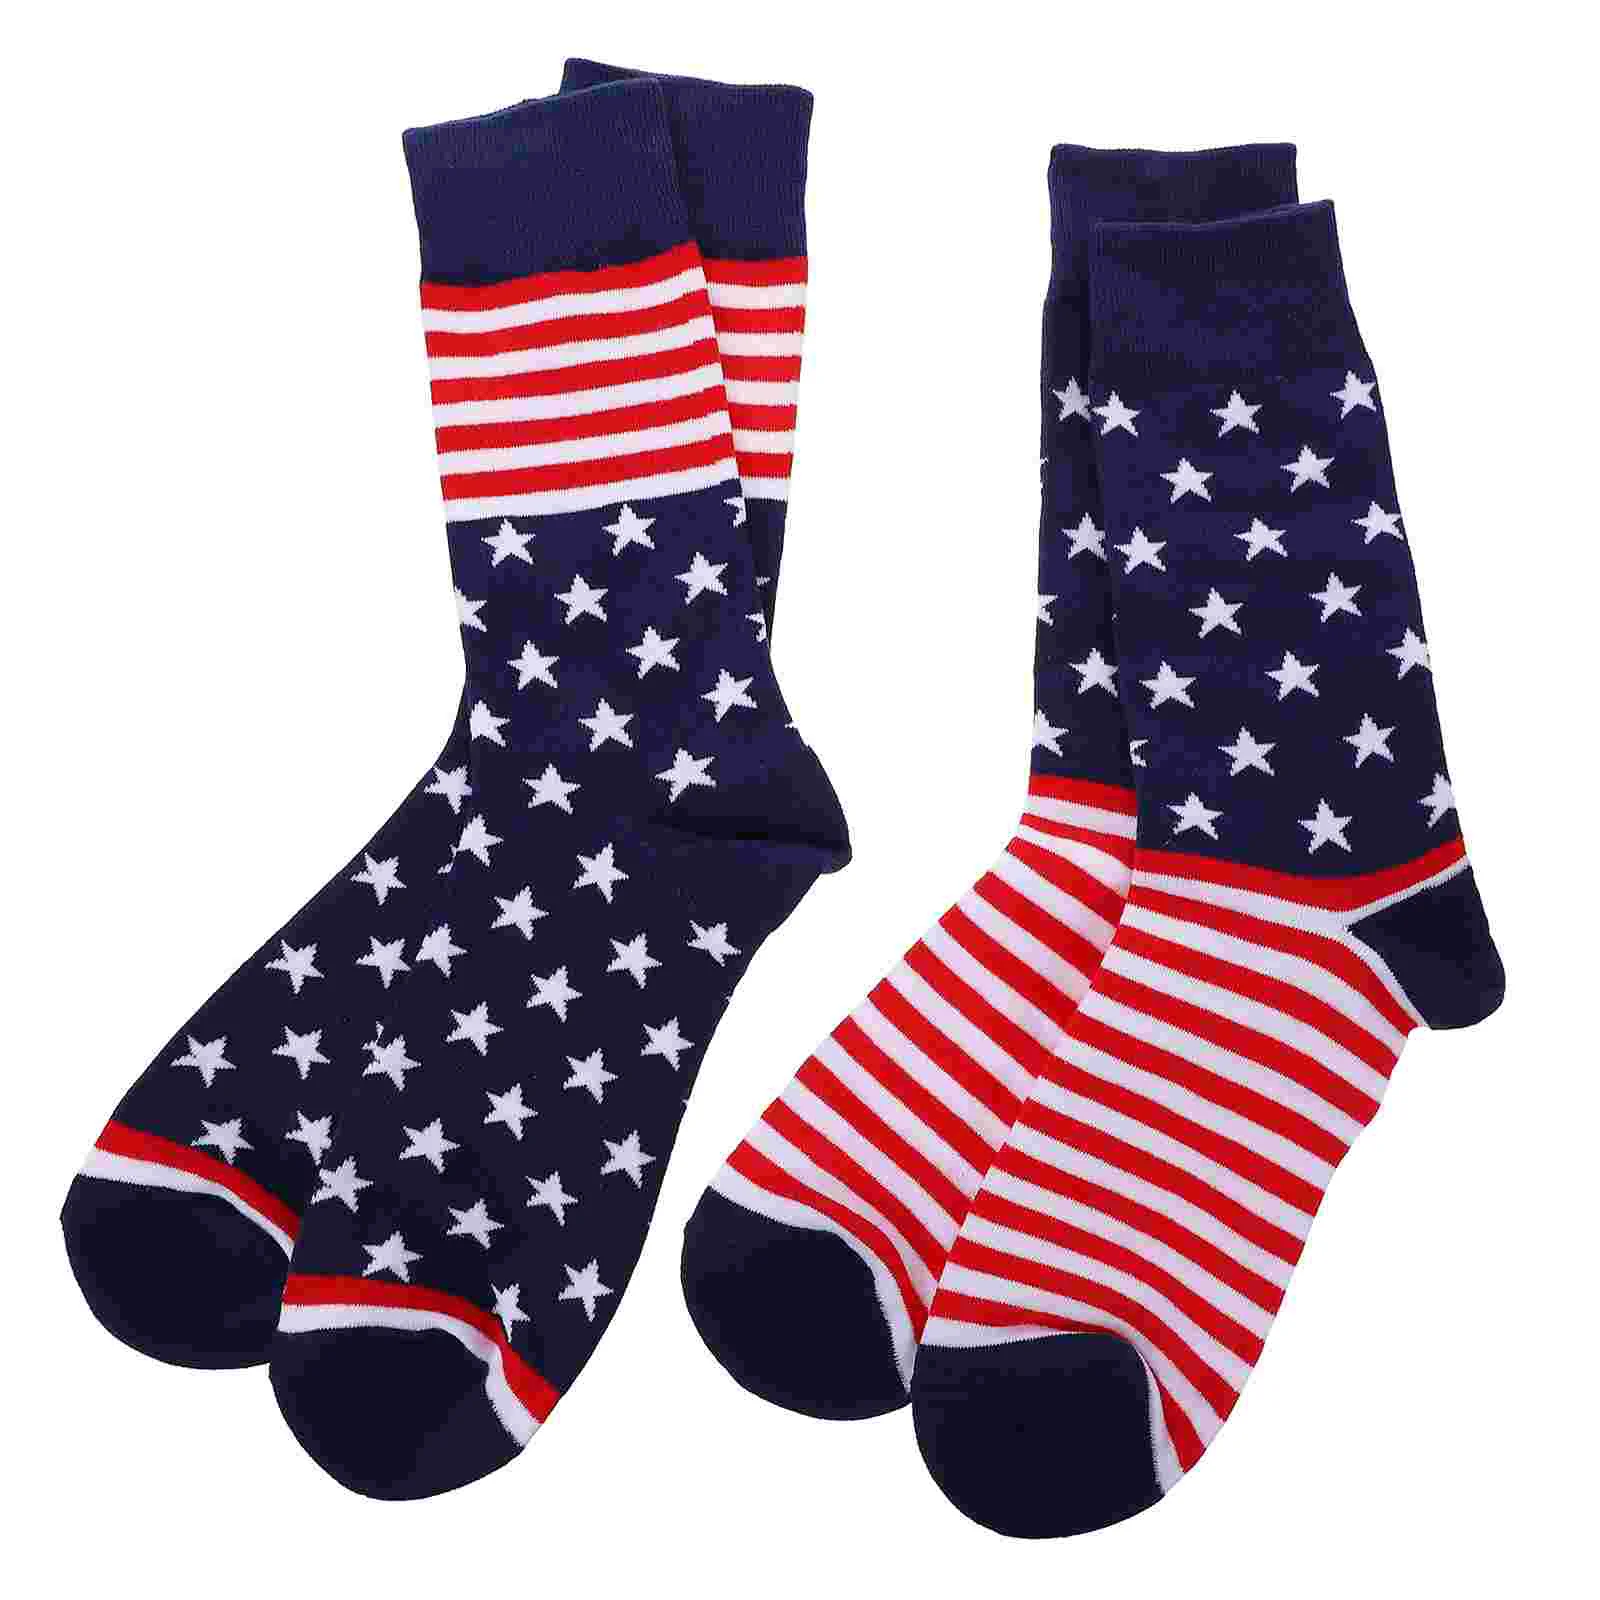 

Носки мужские и женские с флагом США, модные хлопковые чулки средней длины, 2 пары